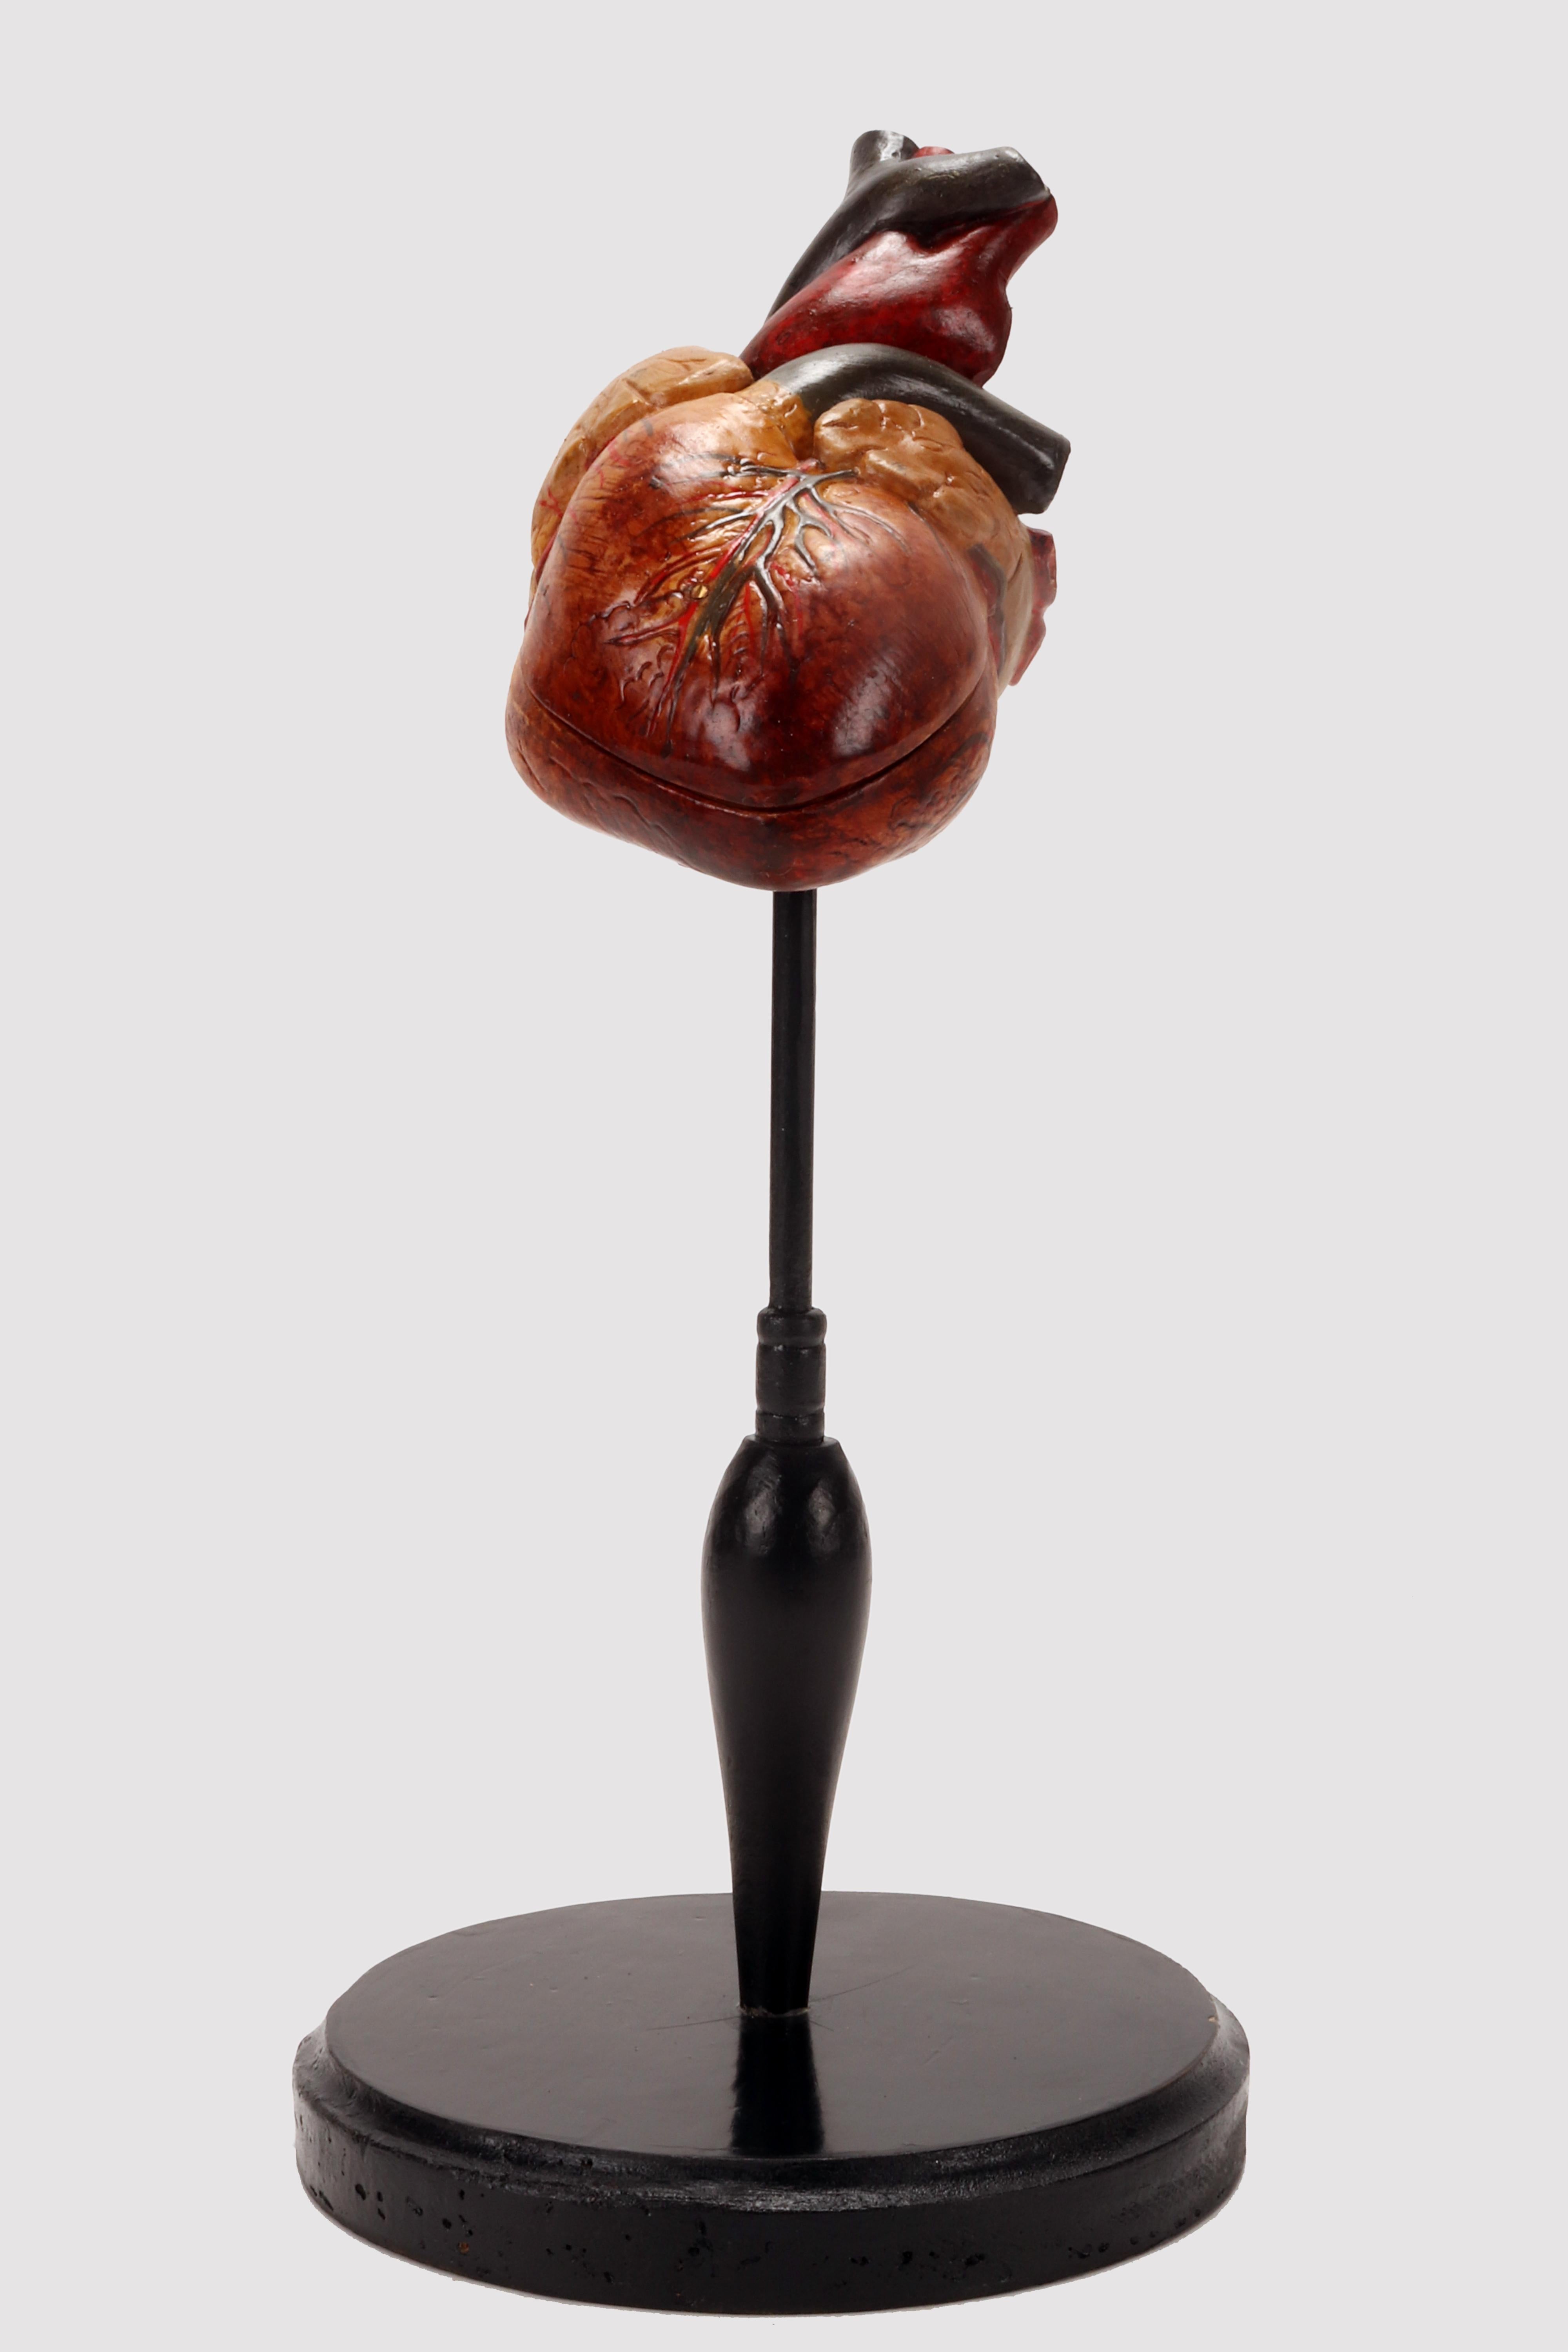 Anatomisches demontierbares Modell eines menschlichen Herzens aus bemaltem Lattex auf einem runden schwarzen Holzsockel. Deutschland um 1950.